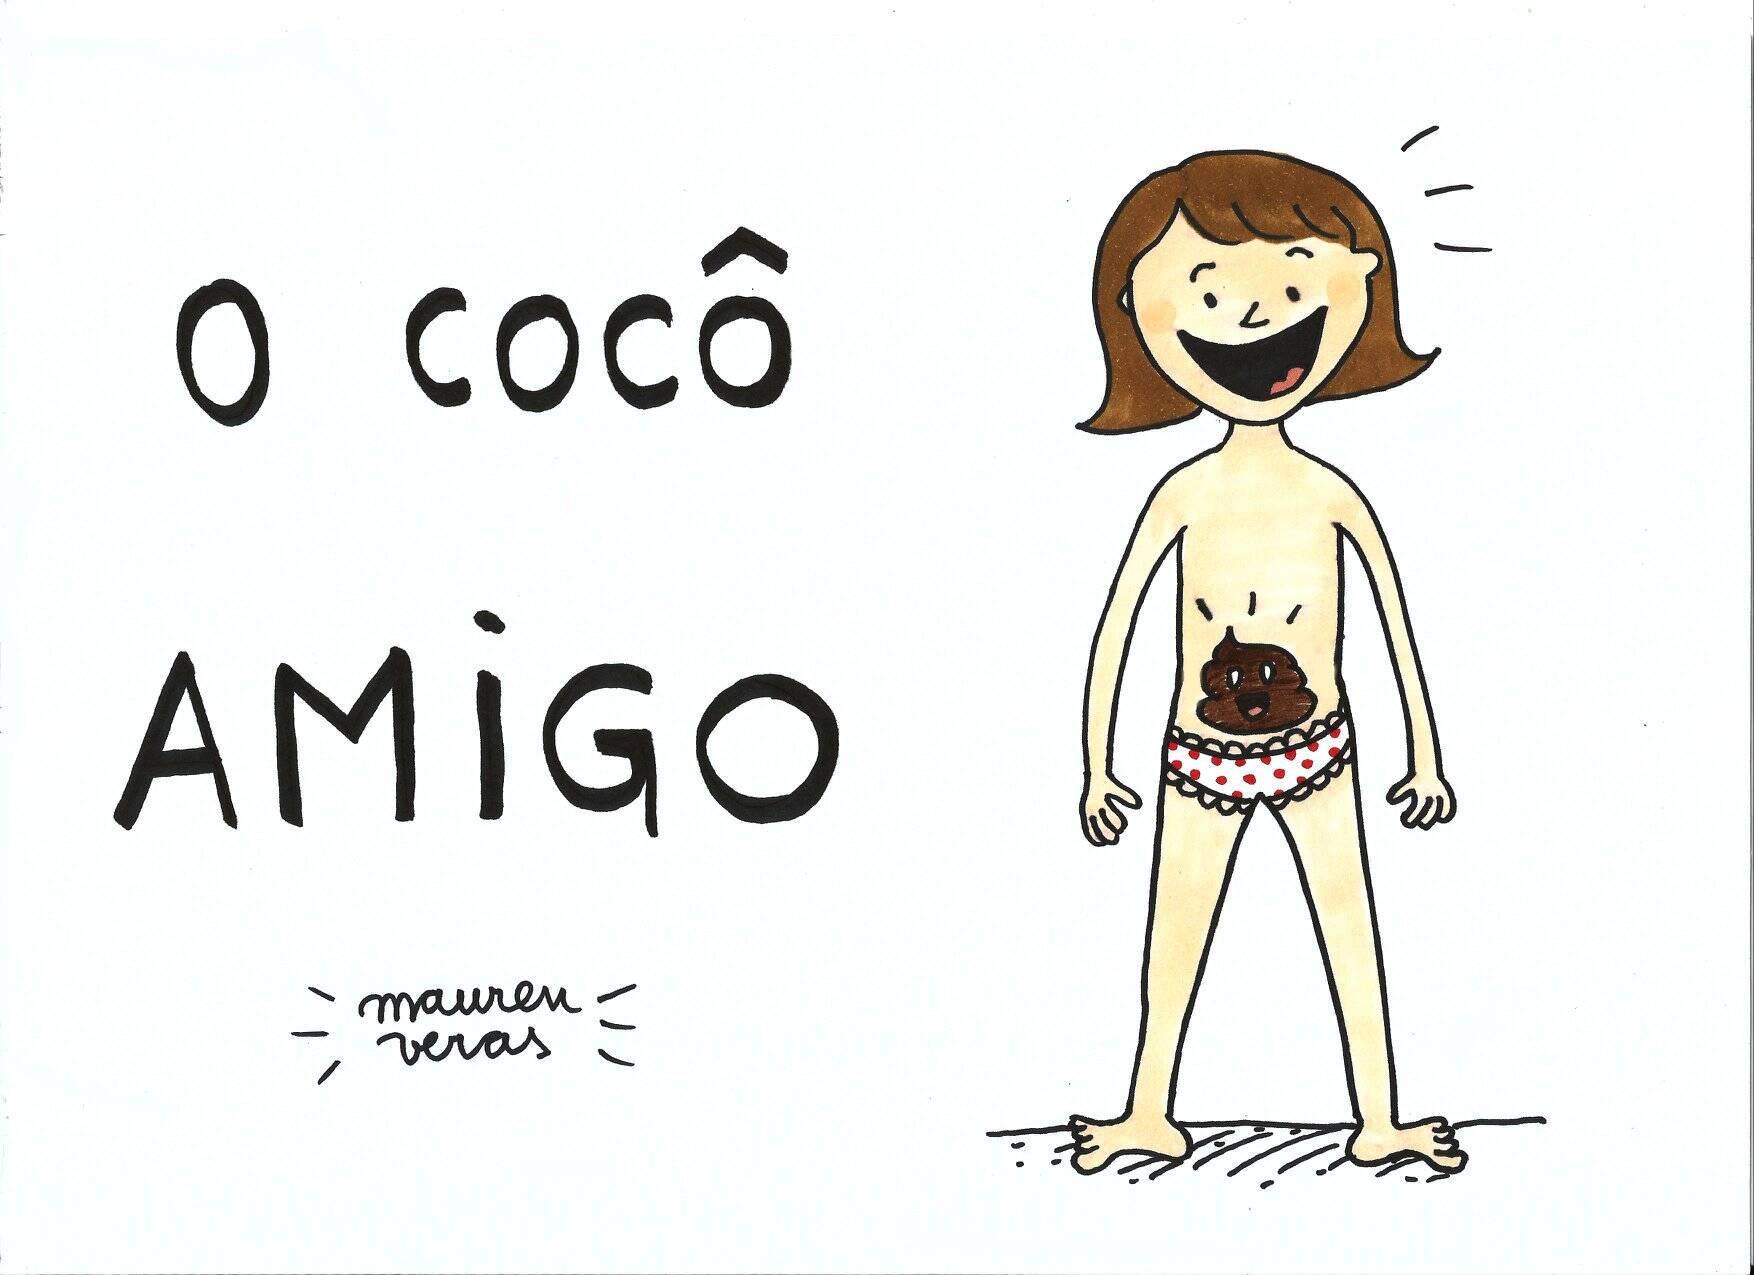 Depois de pedidos de mães, a cartunista Mauren Veras também criou a versão para meninas do livro  "O Cocô Amigo". Foto: Mauren Veras